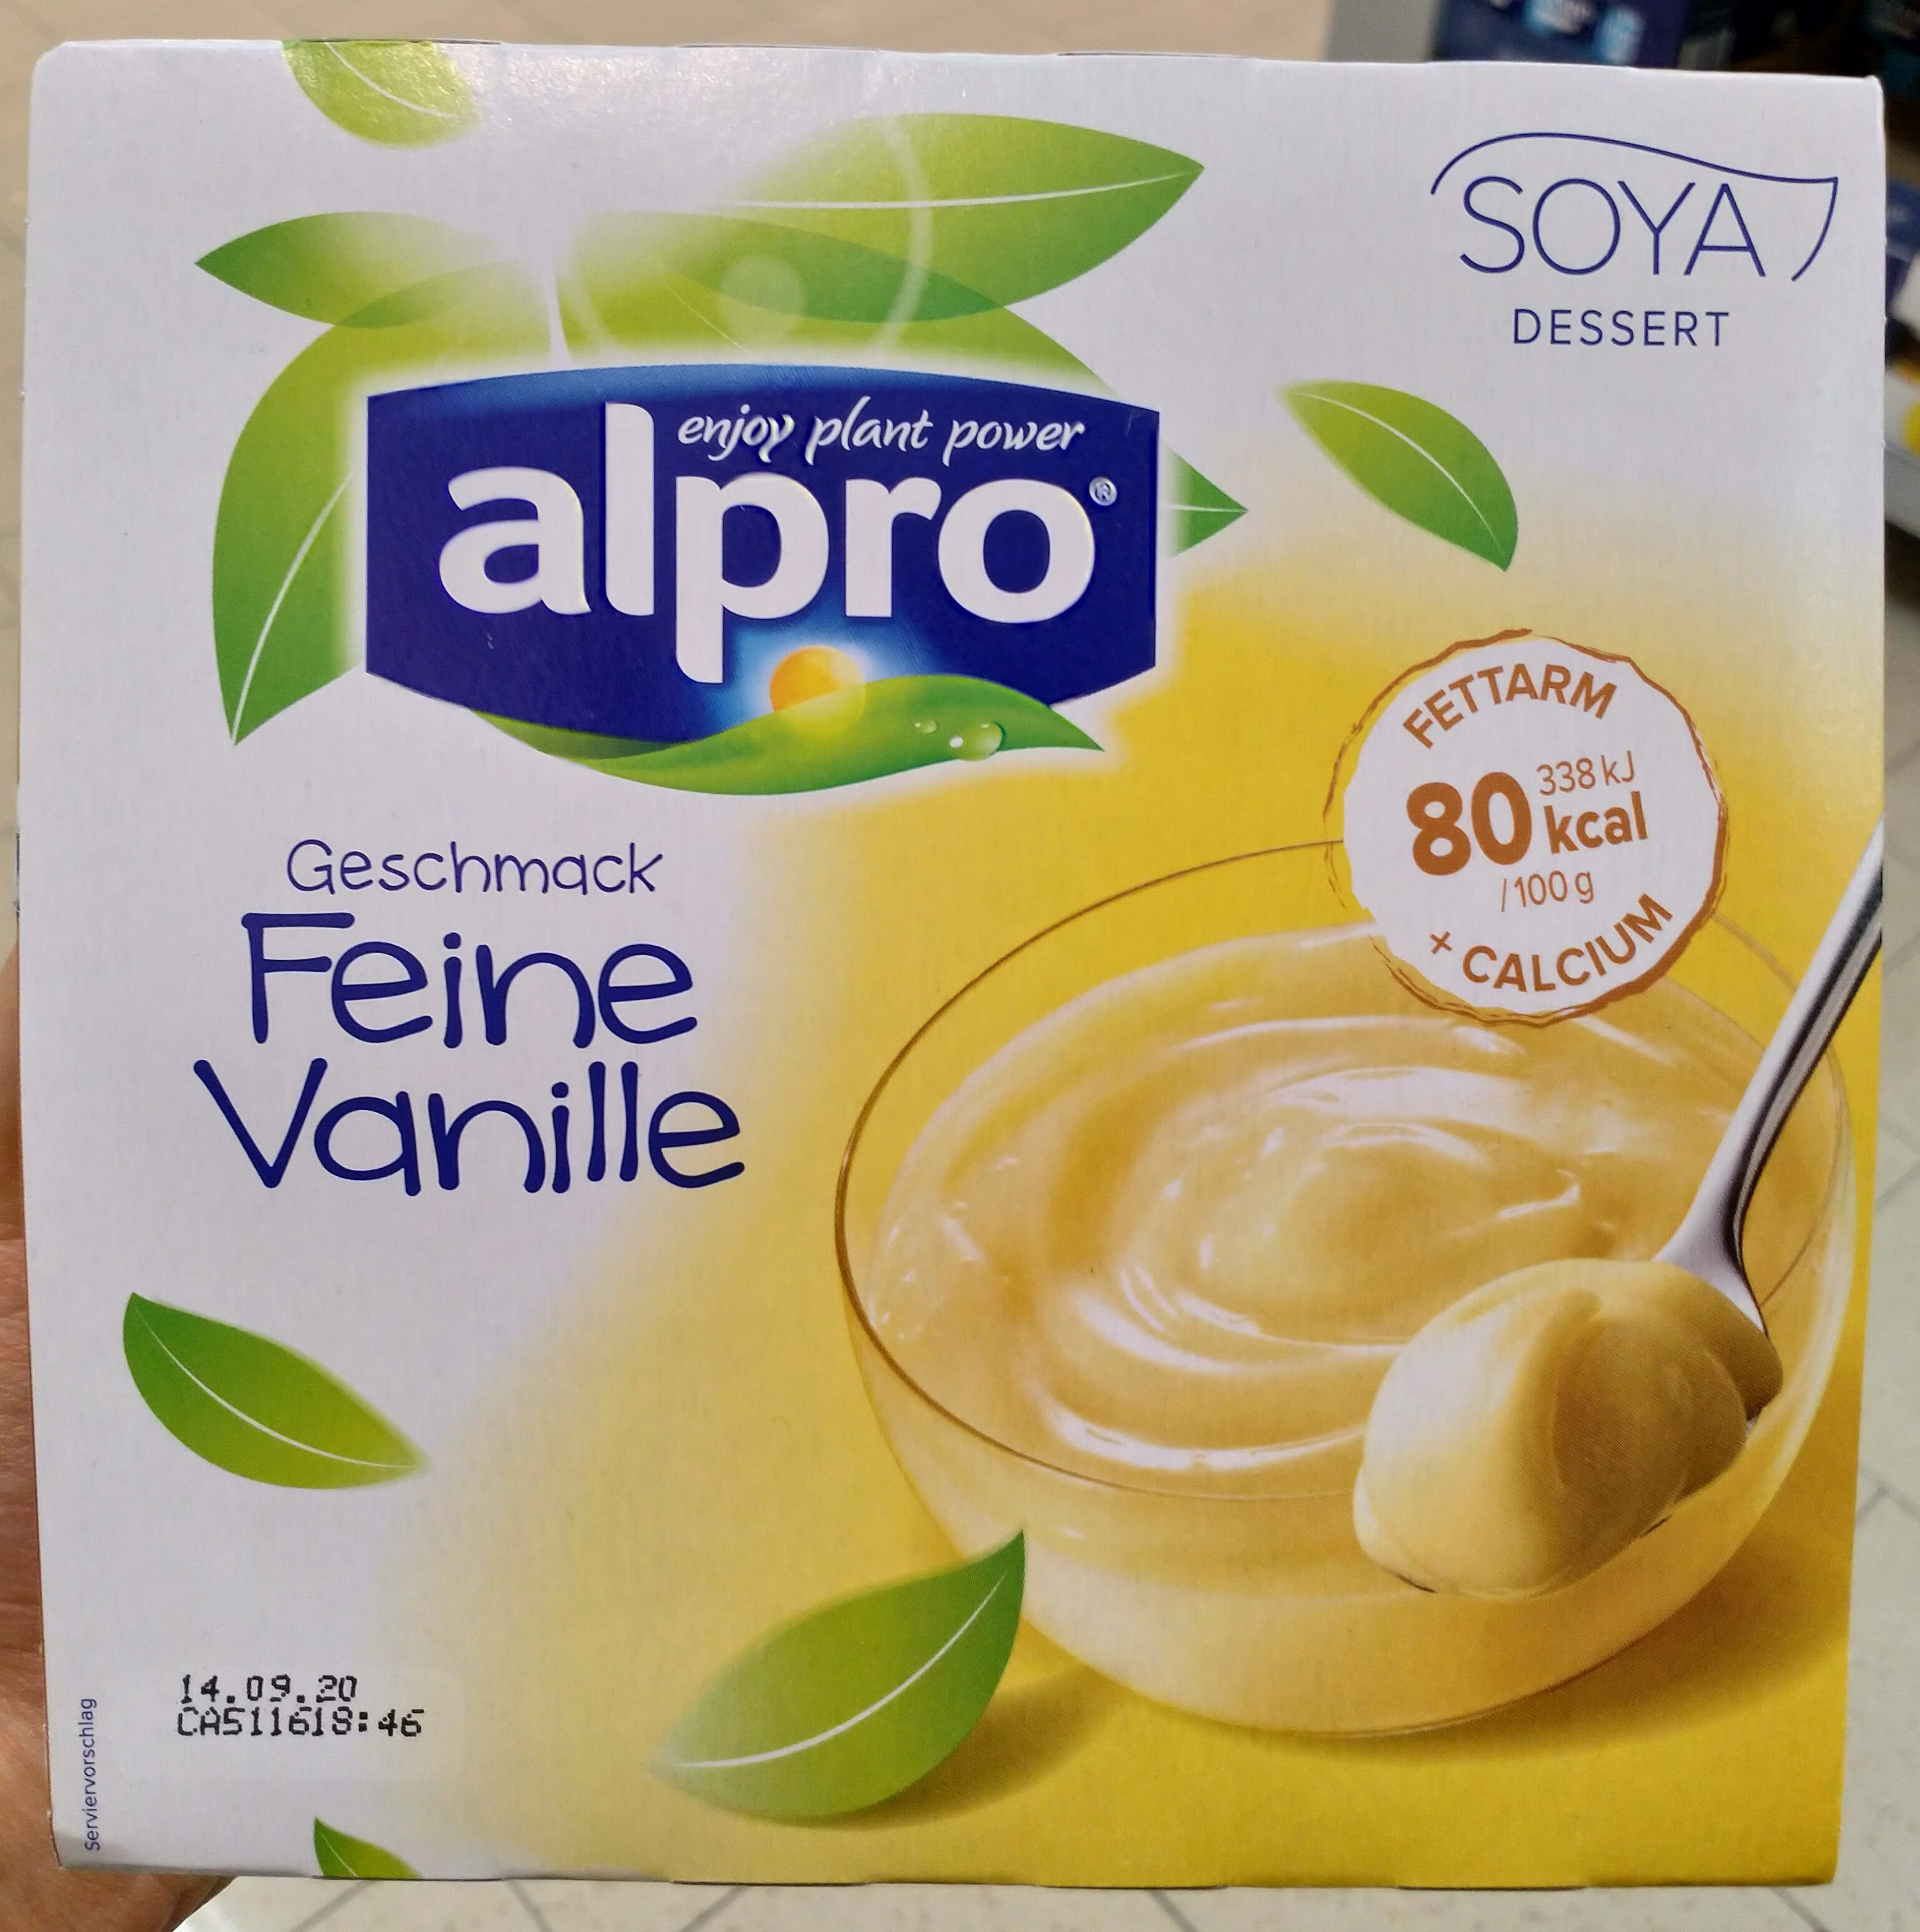 Soya Dessert Feine Vanille - Product - de